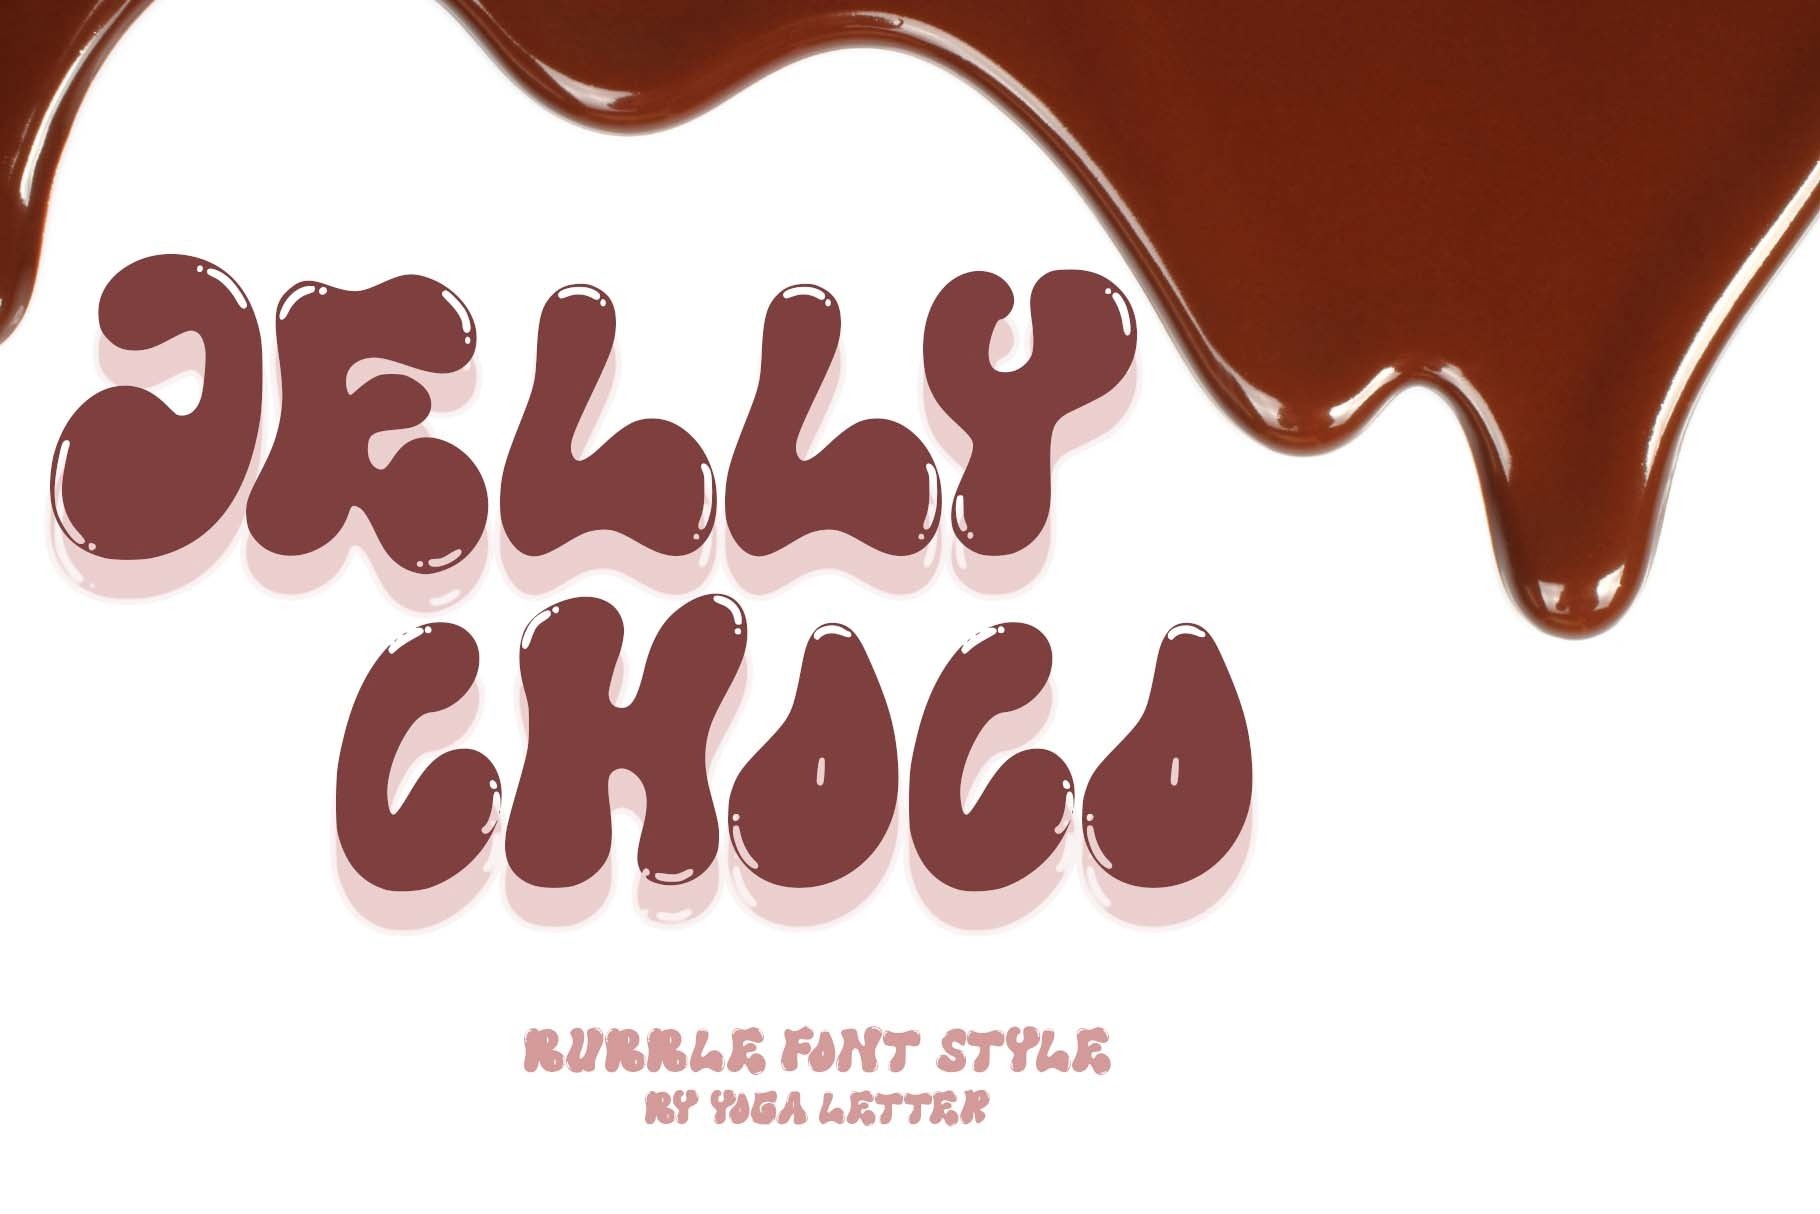 Ejemplo de fuente Jelly Choco